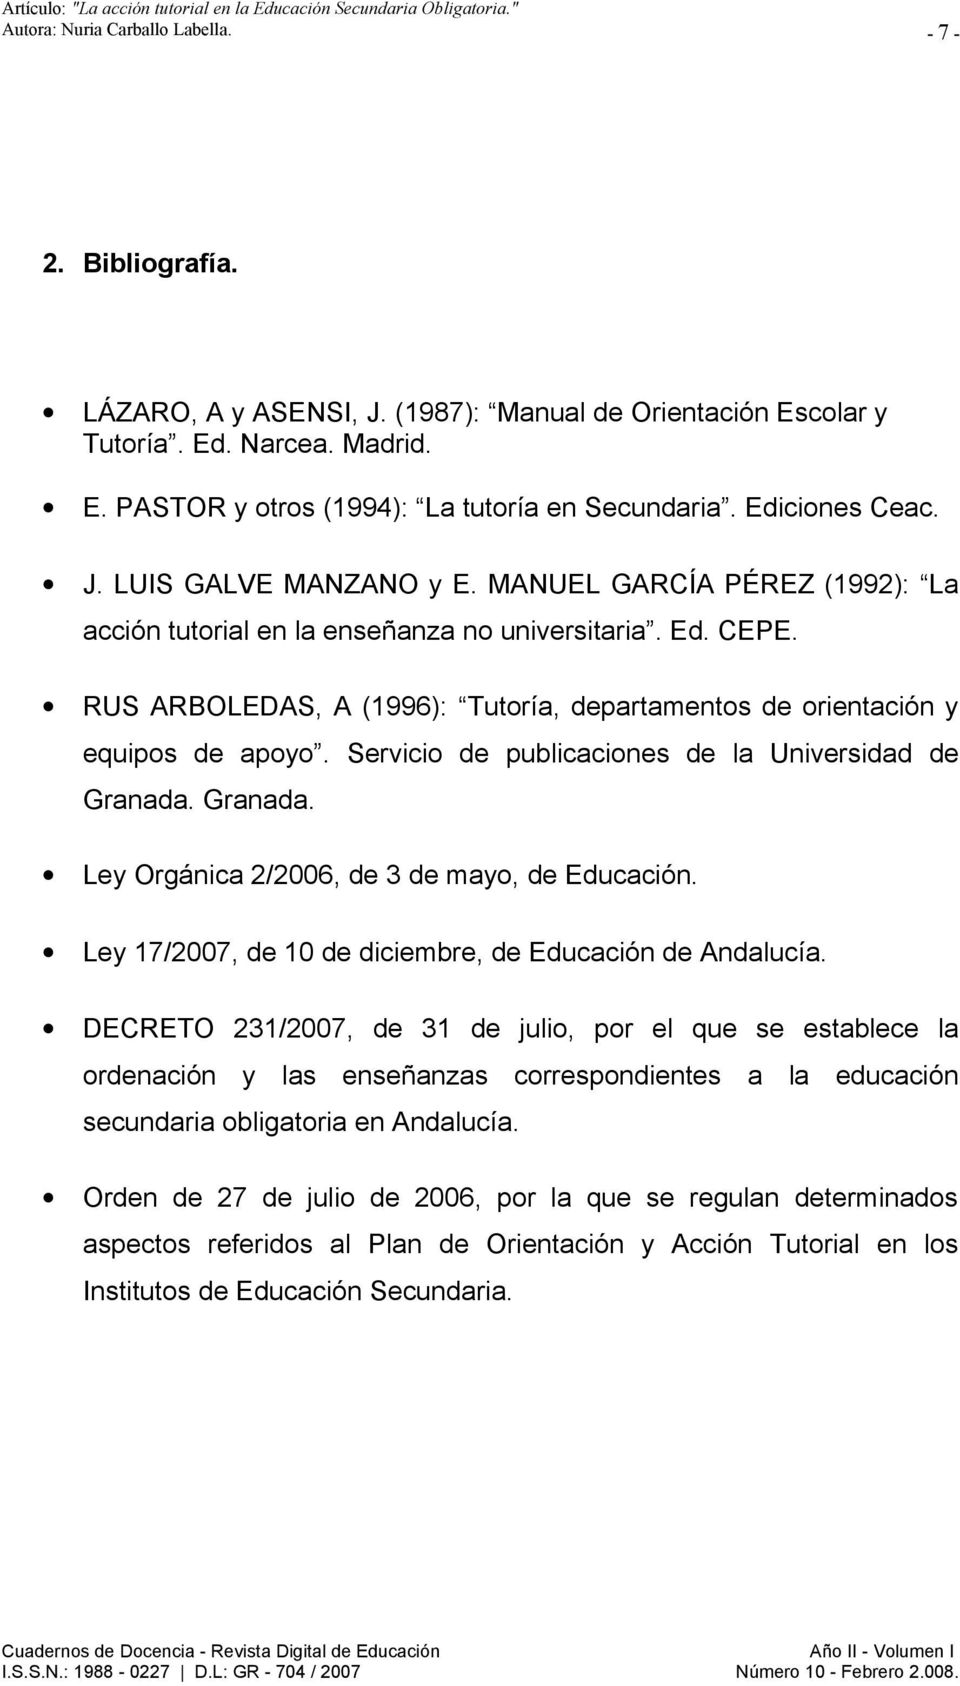 RUS ARBOLEDAS, A (1996): Tutoría, departamentos de orientación y equipos de apoyo. Servicio de publicaciones de la Universidad de Granada. Granada. Ley Orgánica 2/2006, de 3 de mayo, de Educación.